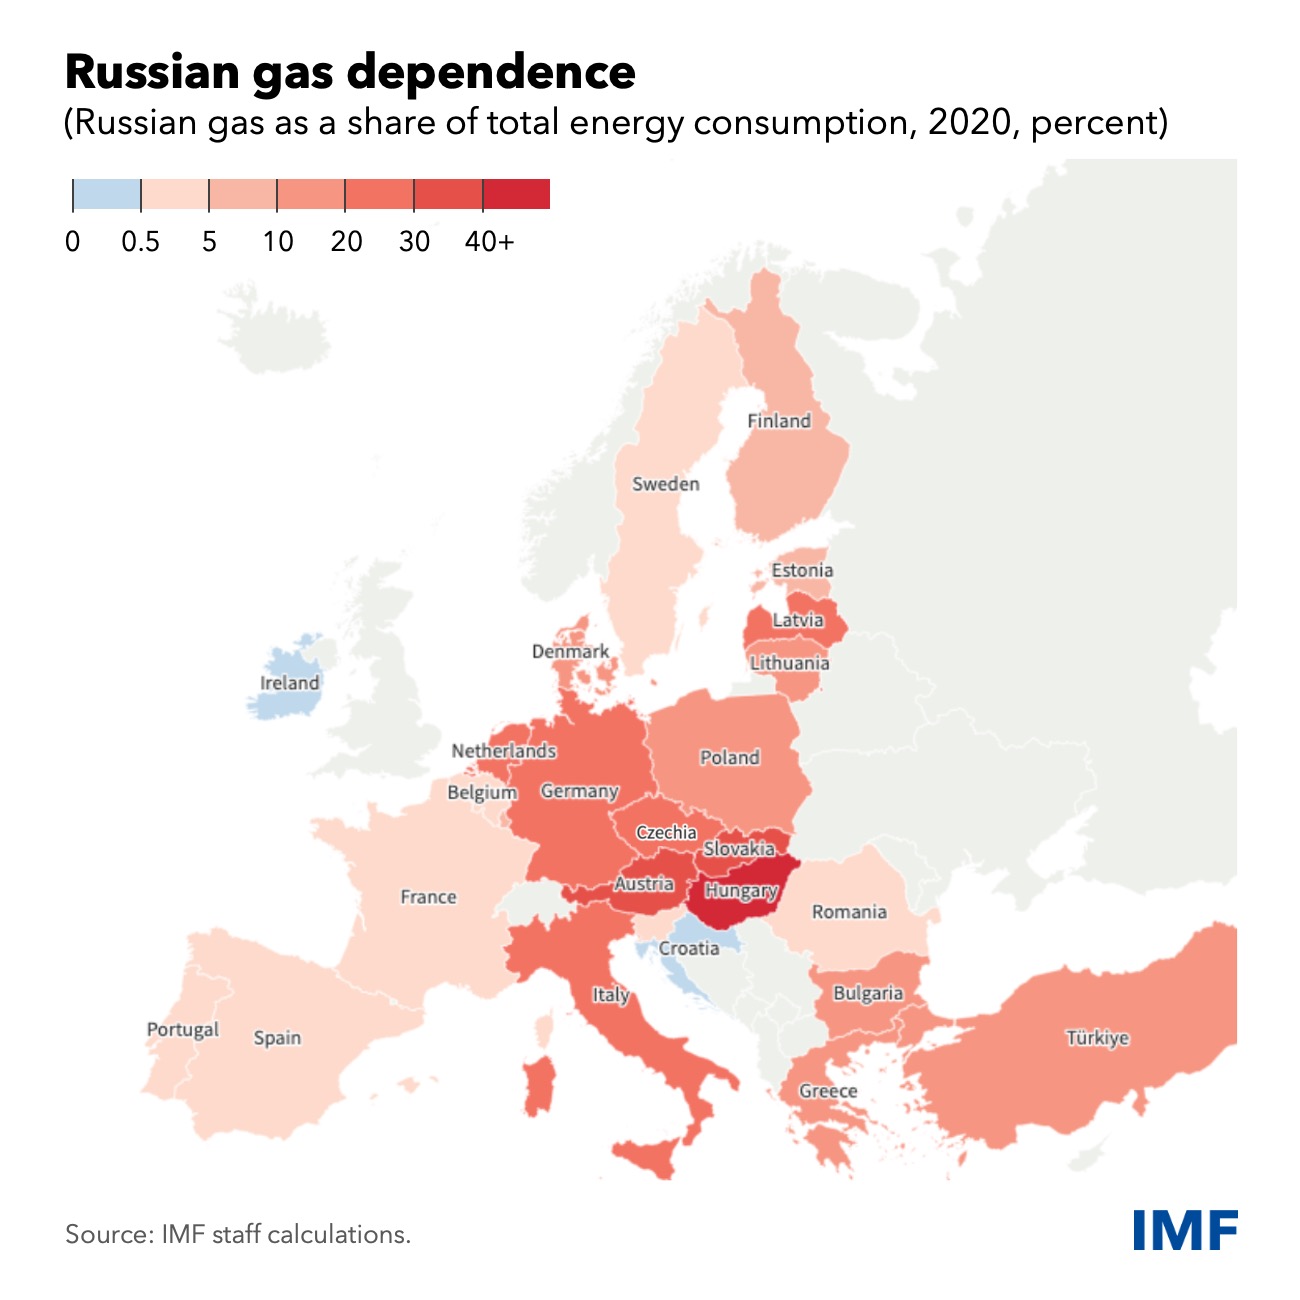 Skala uzależnienia od rosyjskiego gazu danych europejskich krajów